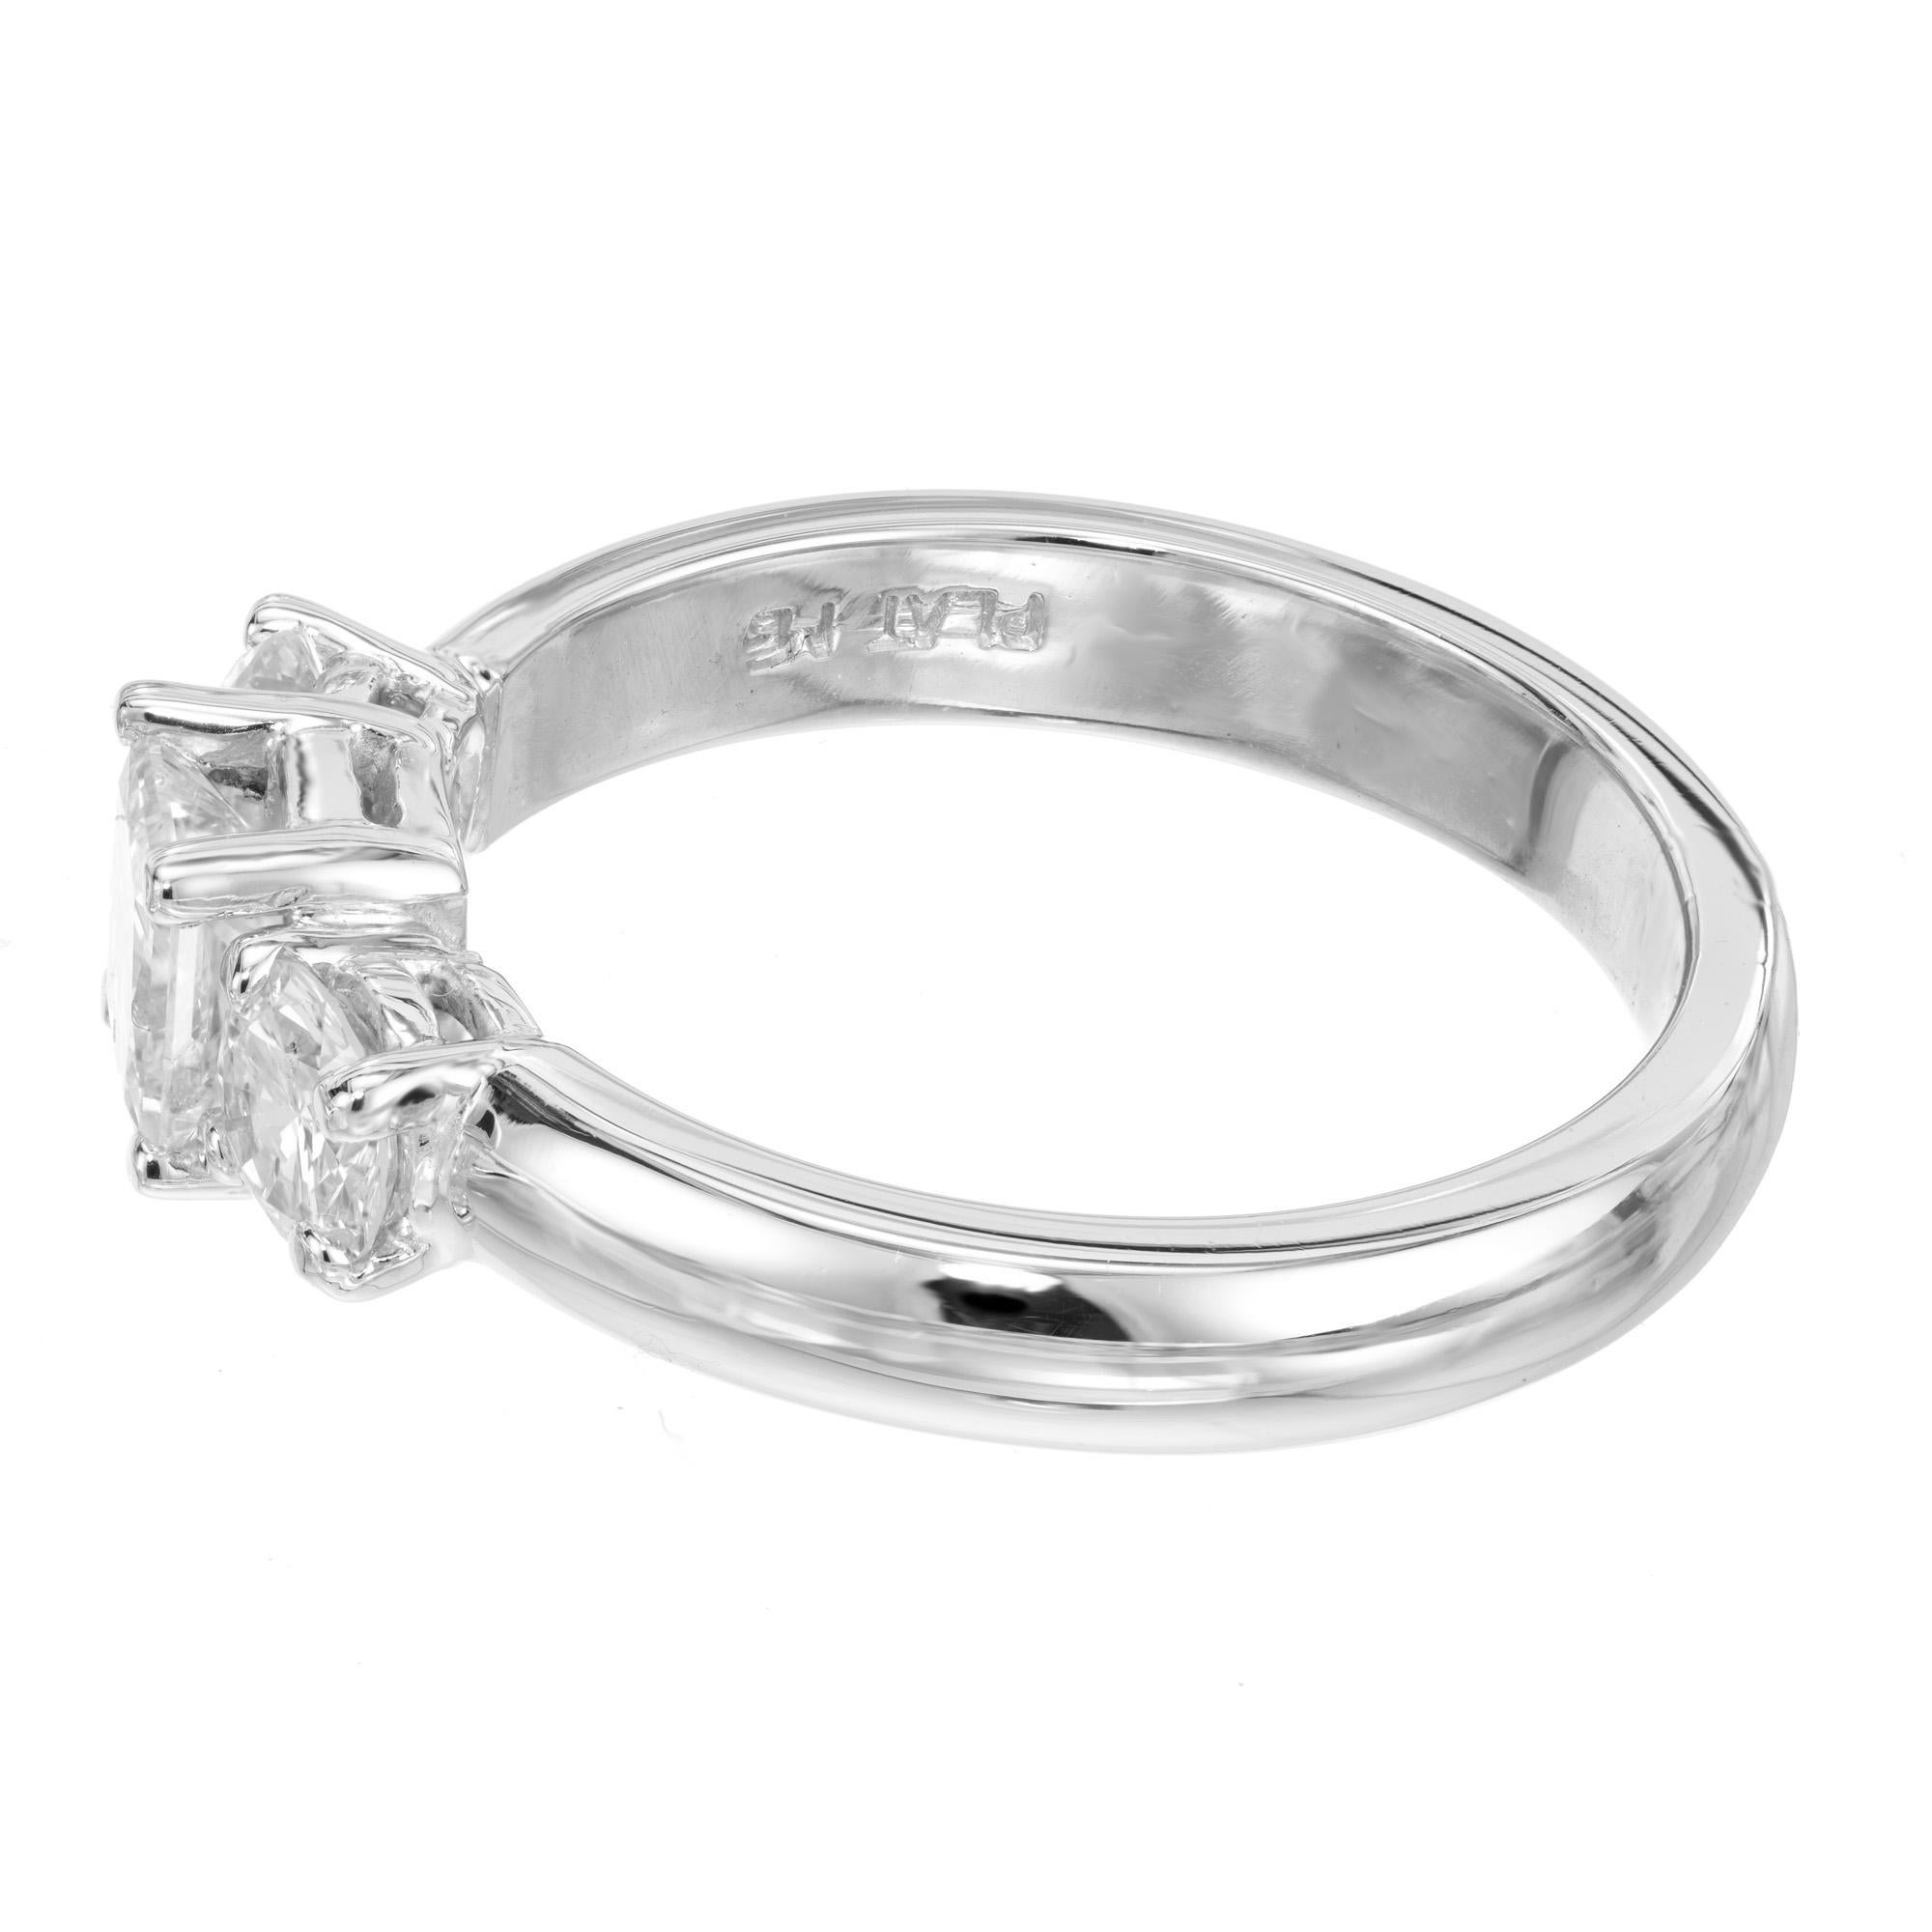 .50 carat engagement ring